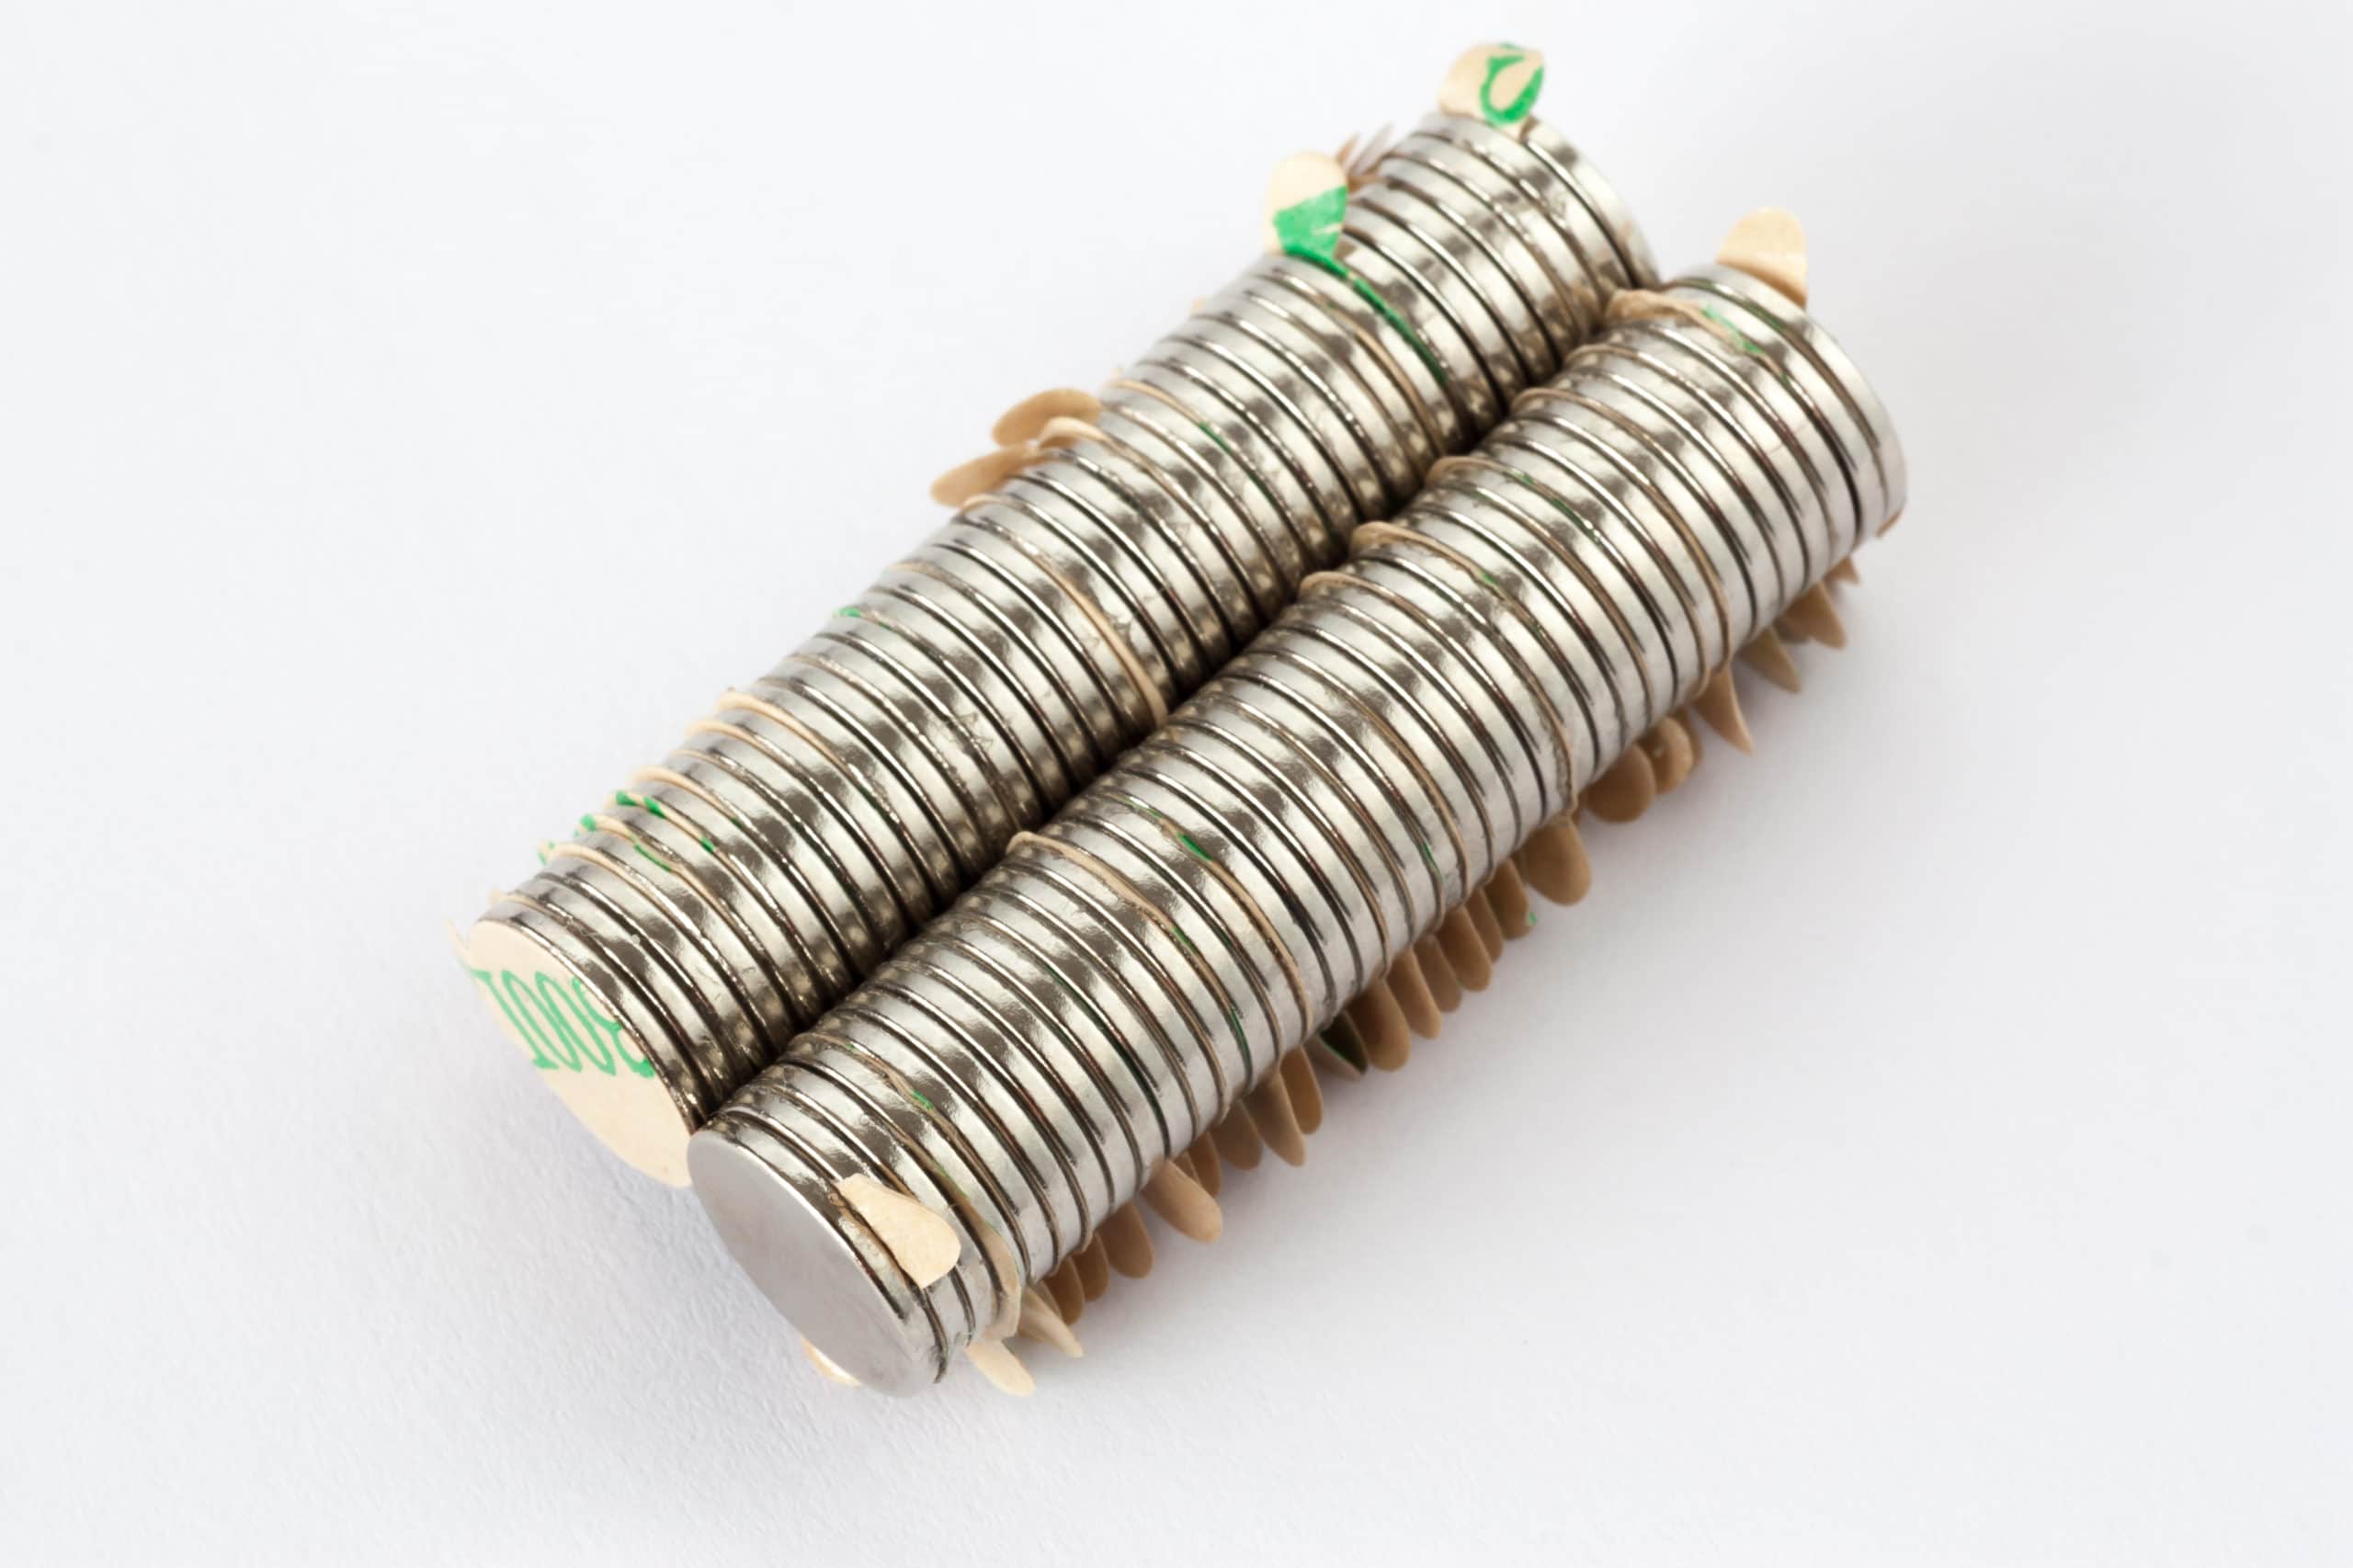 20 NEODYM Magnet Scheiben selbstklebend D9,5x0,75 mm N45 Supermagnet 400 G Flach 